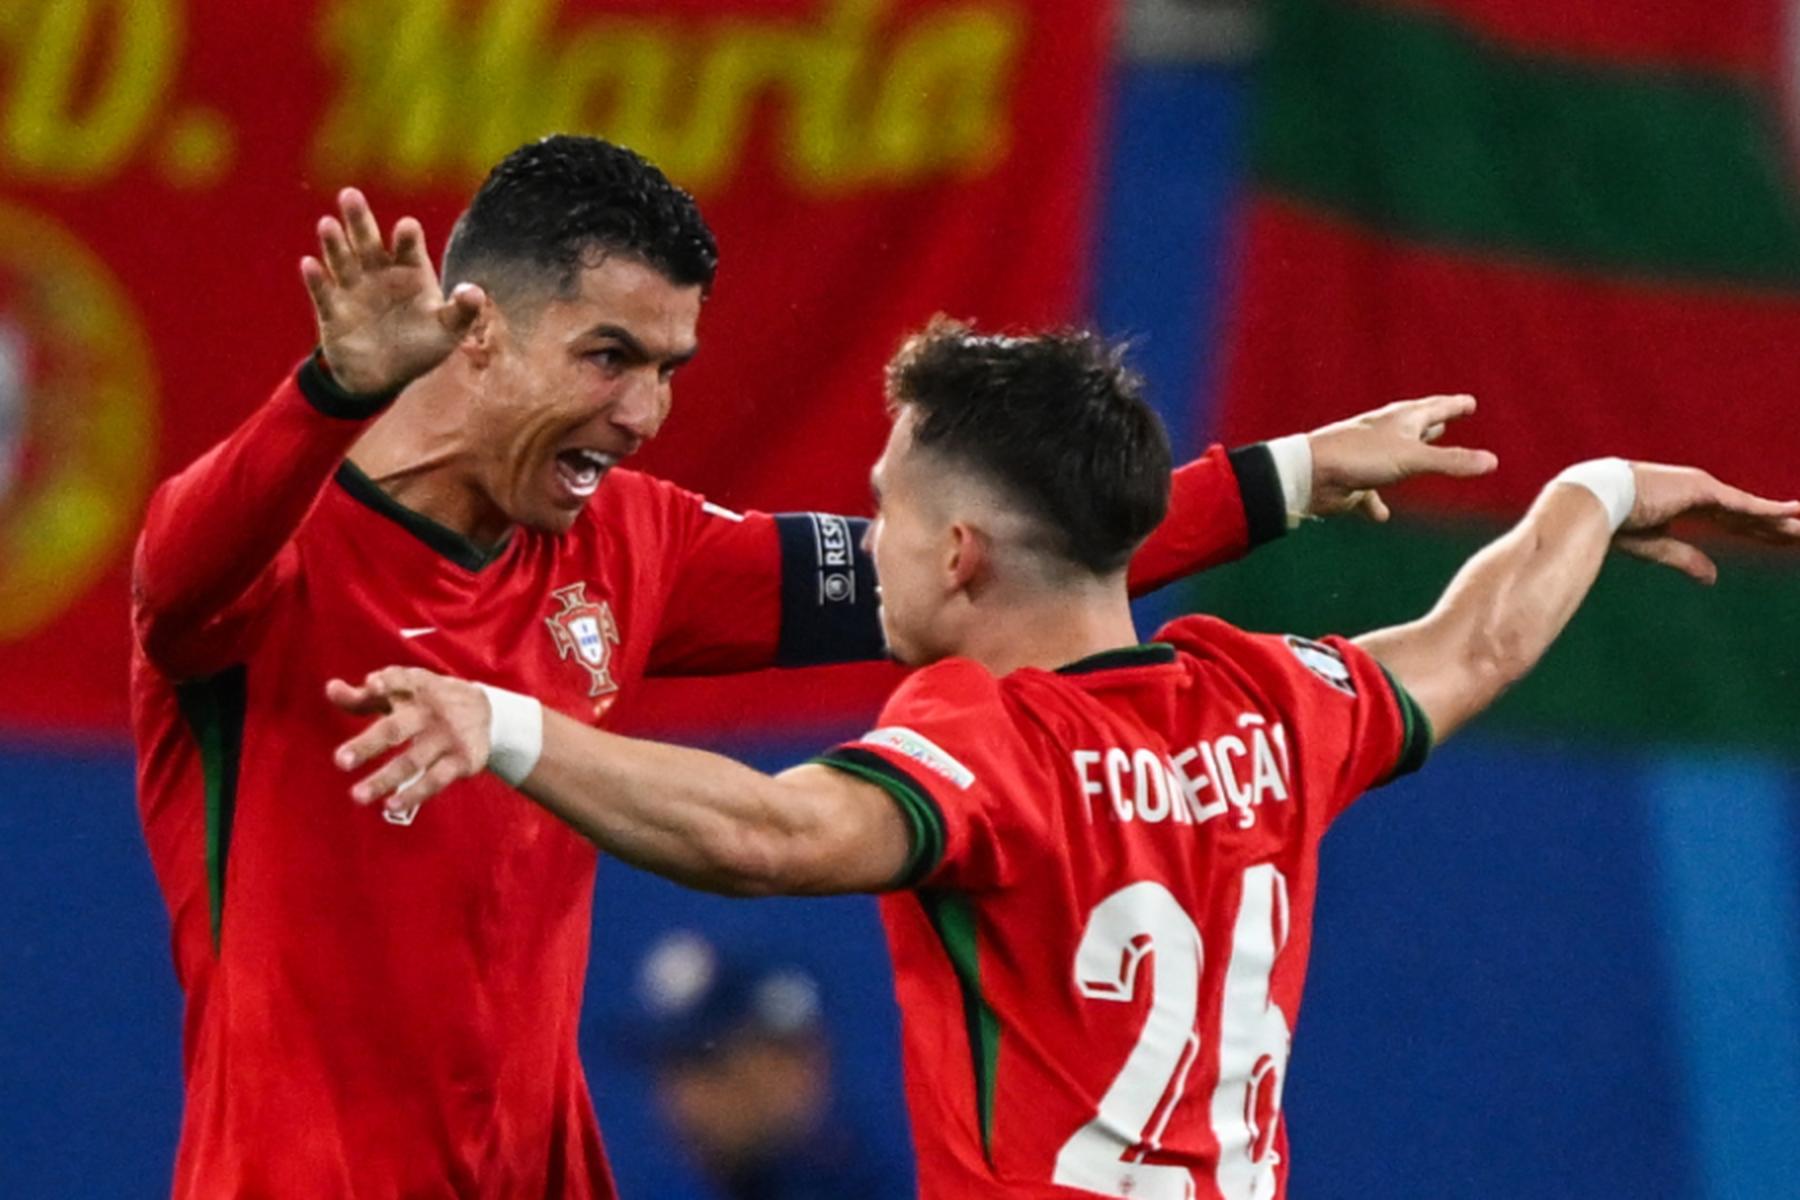 Leipzig: Dominante Portugiesen mit spätem 2:1-Sieg über Tschechien